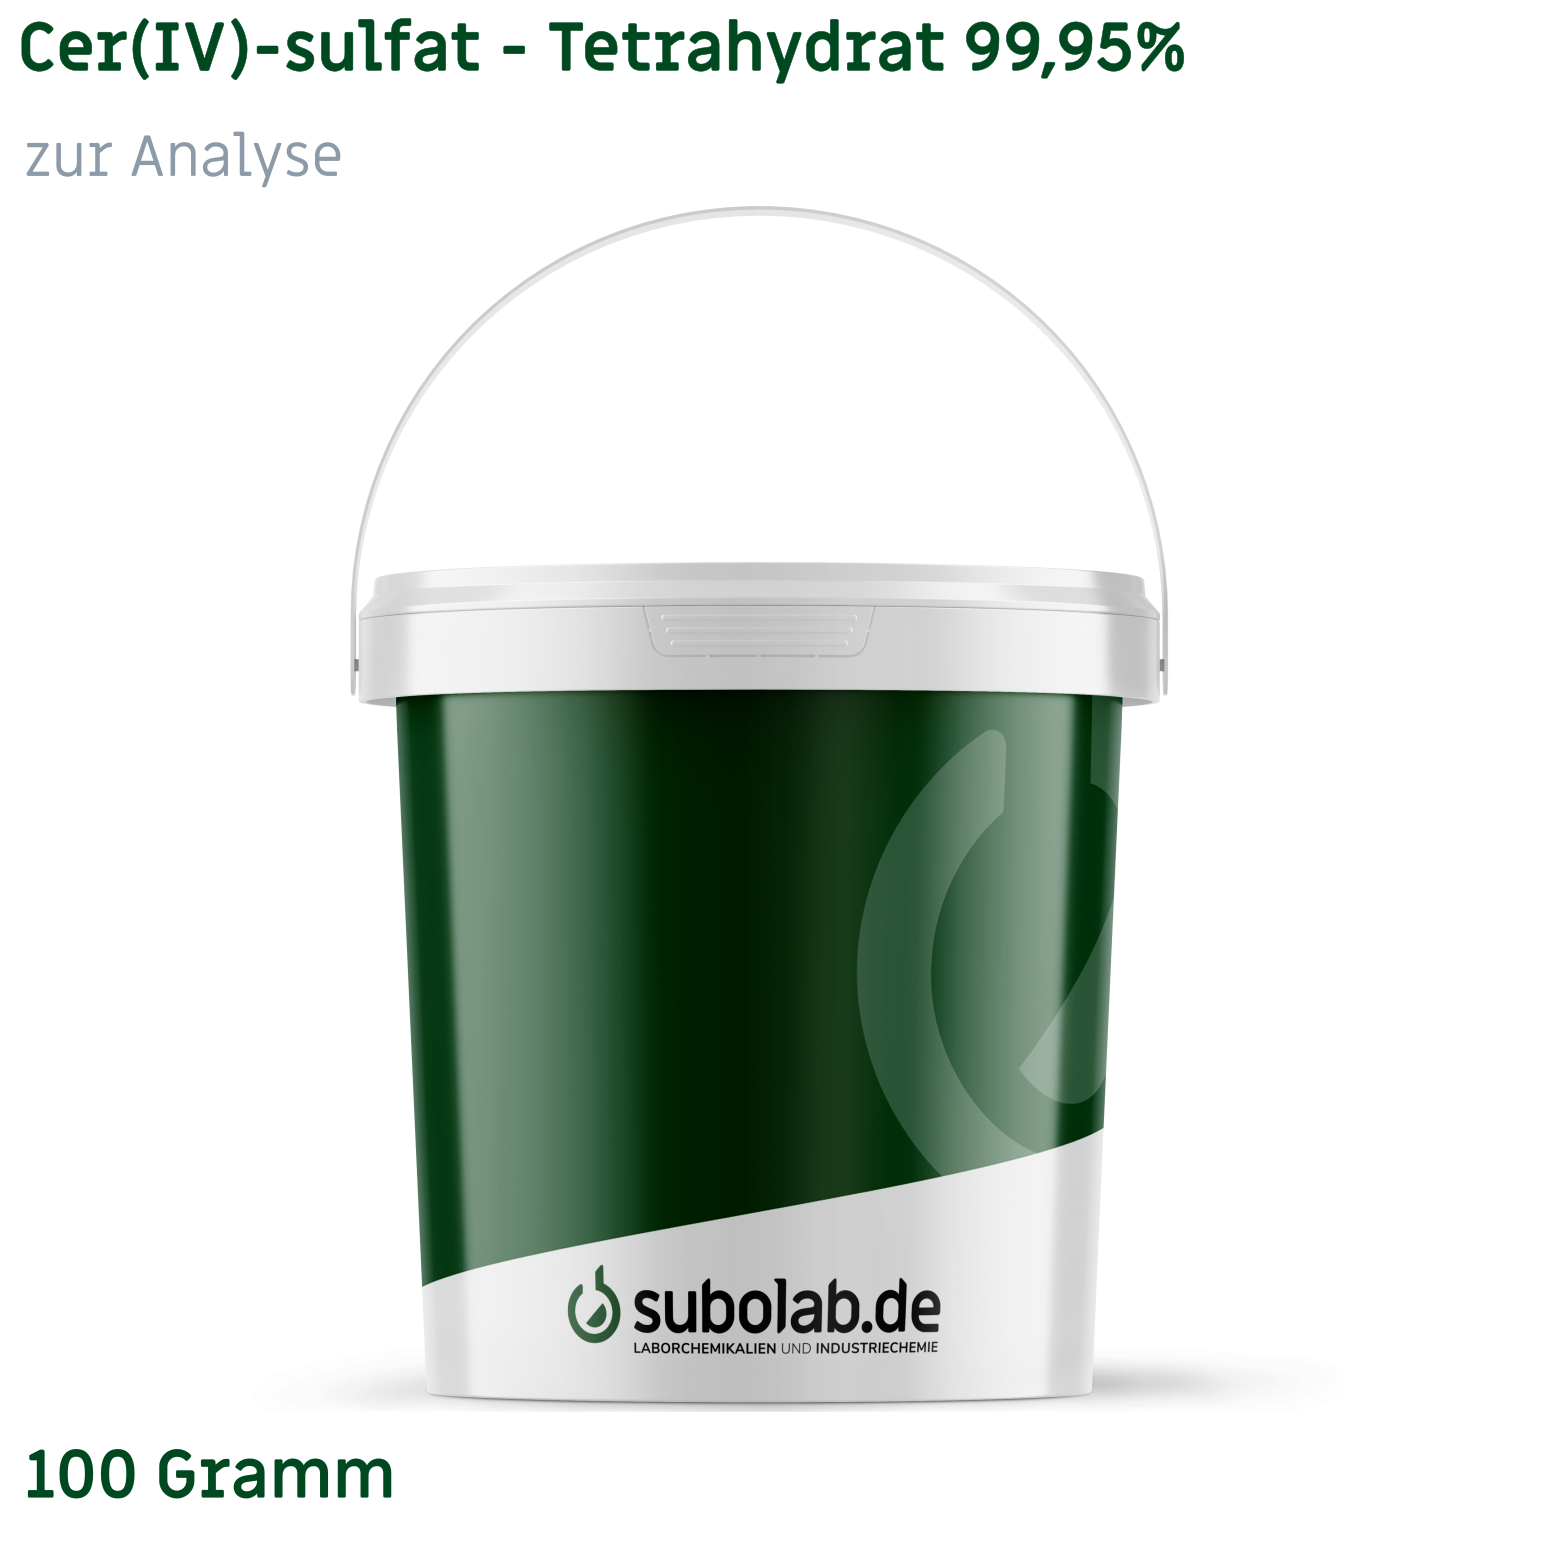 Bild von Cer(IV)-sulfat - Tetrahydrat 99,95% zur Analyse (100 Gramm)